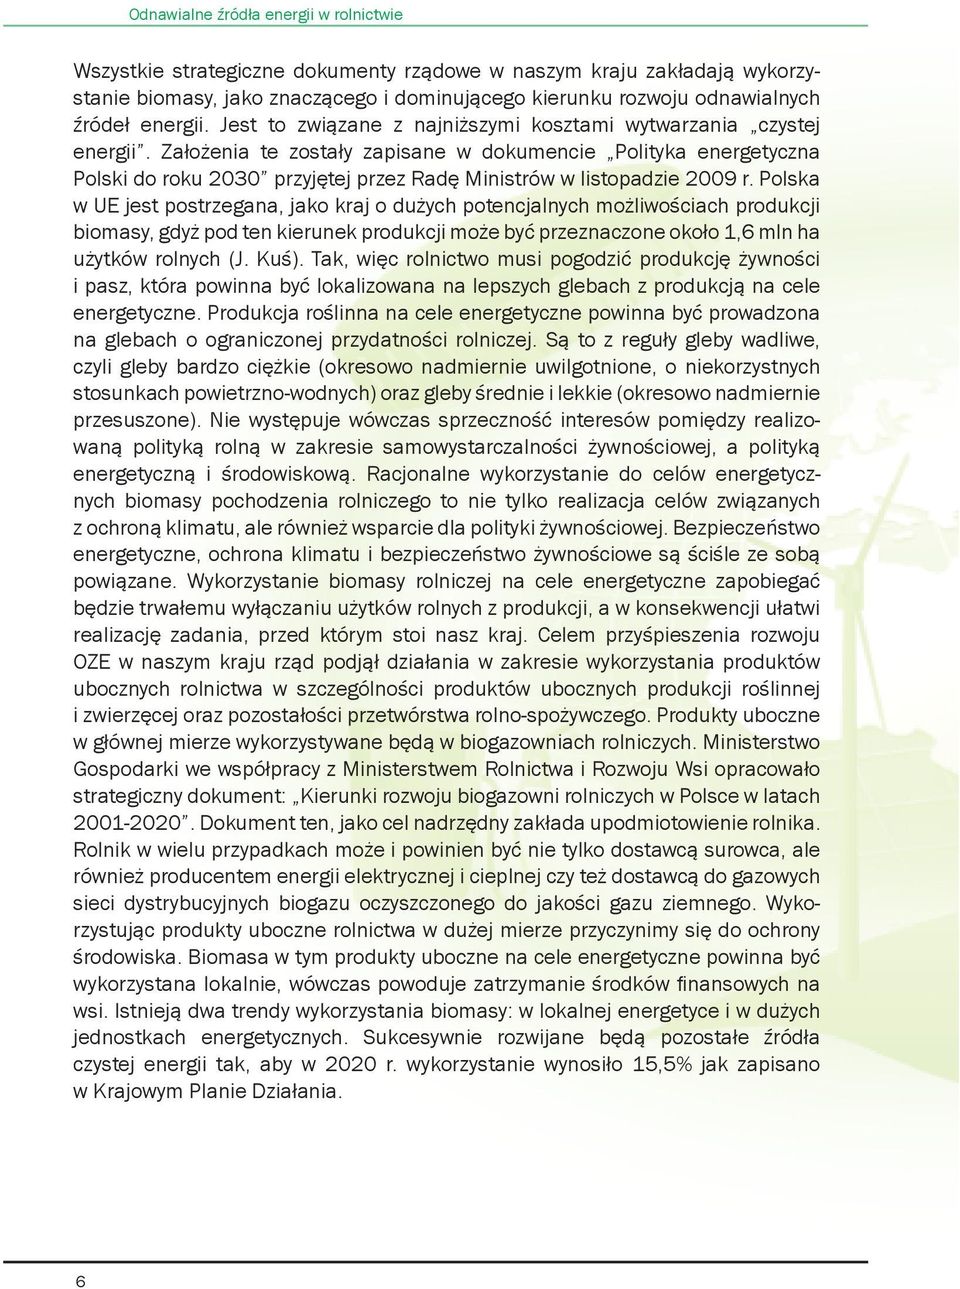 Założenia te zostały zapisane w dokumencie Polityka energetyczna Polski do roku 2030 przyjętej przez Radę Ministrów w listopadzie 2009 r.